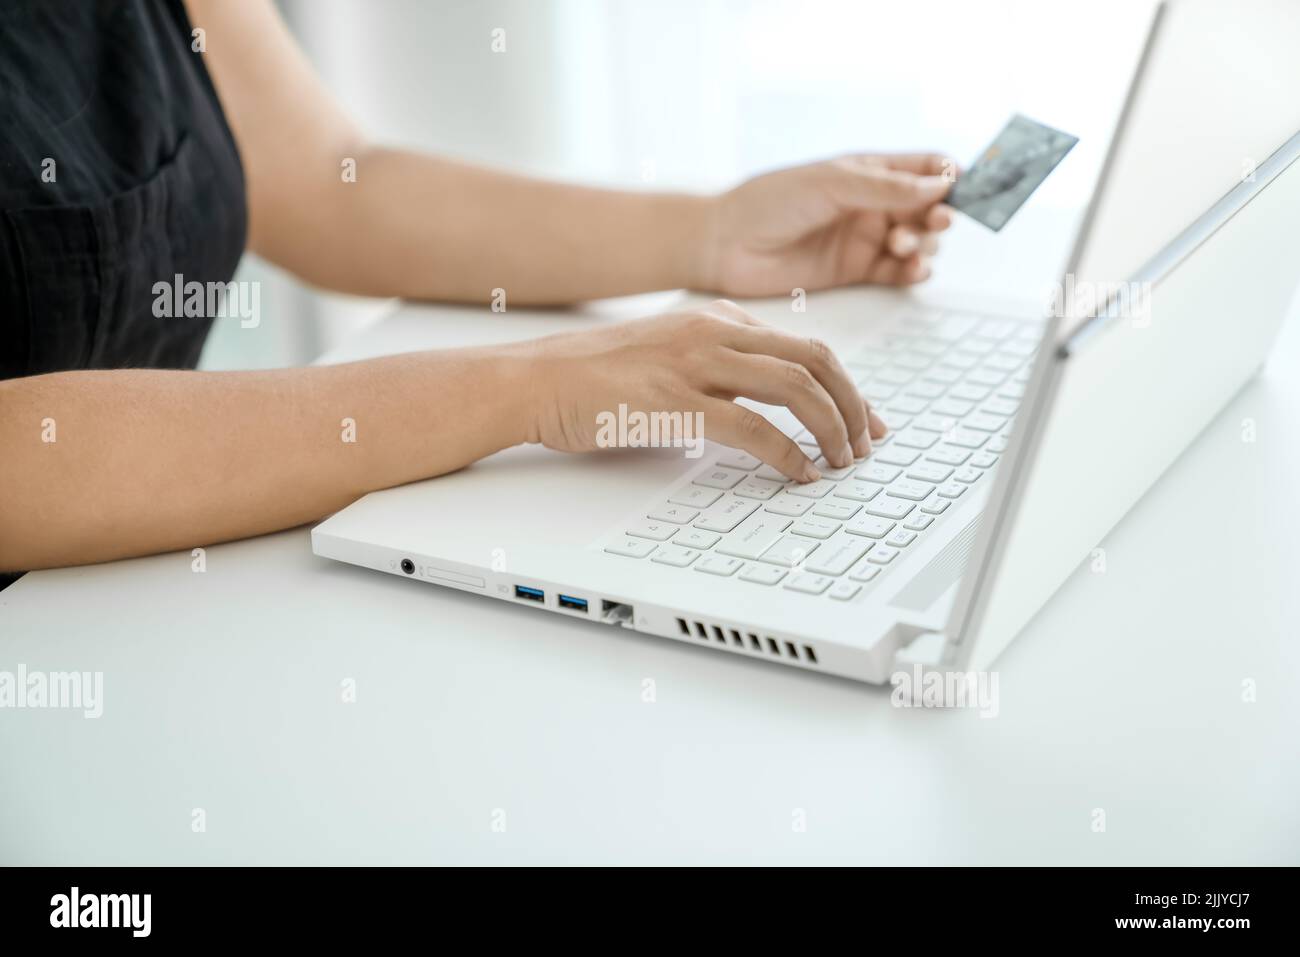 Mujer joven hace compras en línea sentado frente al ordenador portátil con la tarjeta bancaria en la mano. Manos en primer plano. Concepto de compras en línea y transferencia de dinero. Foto de stock